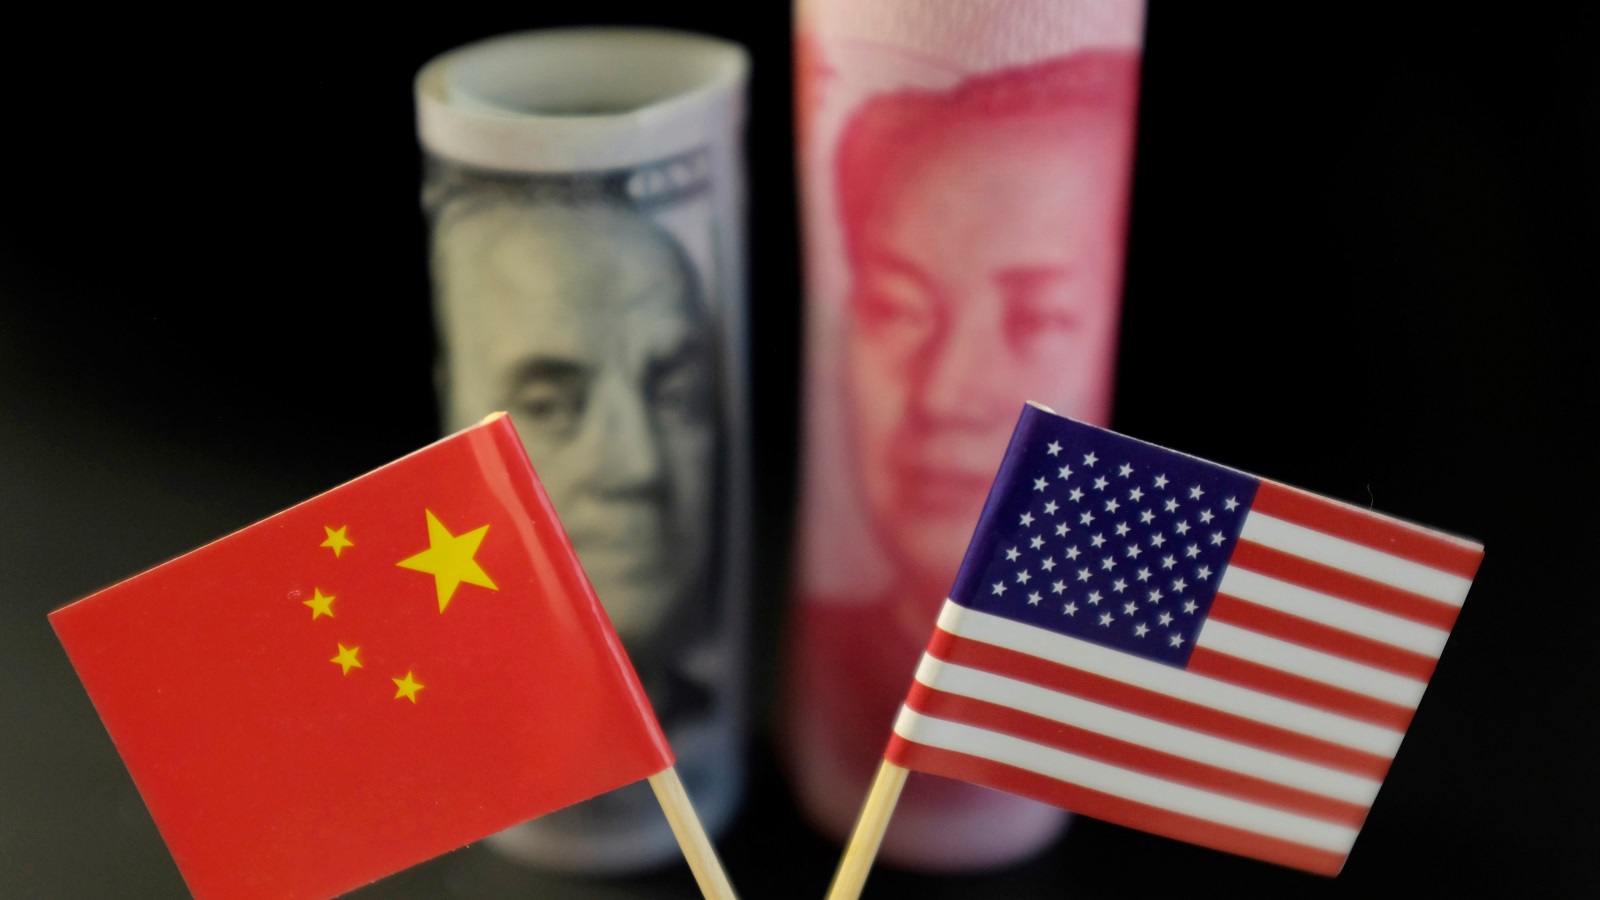 الصين والولايات المتحدة مترابطتان بشدة اقتصاديا، حيث يمثل كل واحد للآخر الشريك التجاري الأضخم، وأي محاولة لفصلهما اقتصاديا ستؤدي إلى عواقب كارثية على كليهما